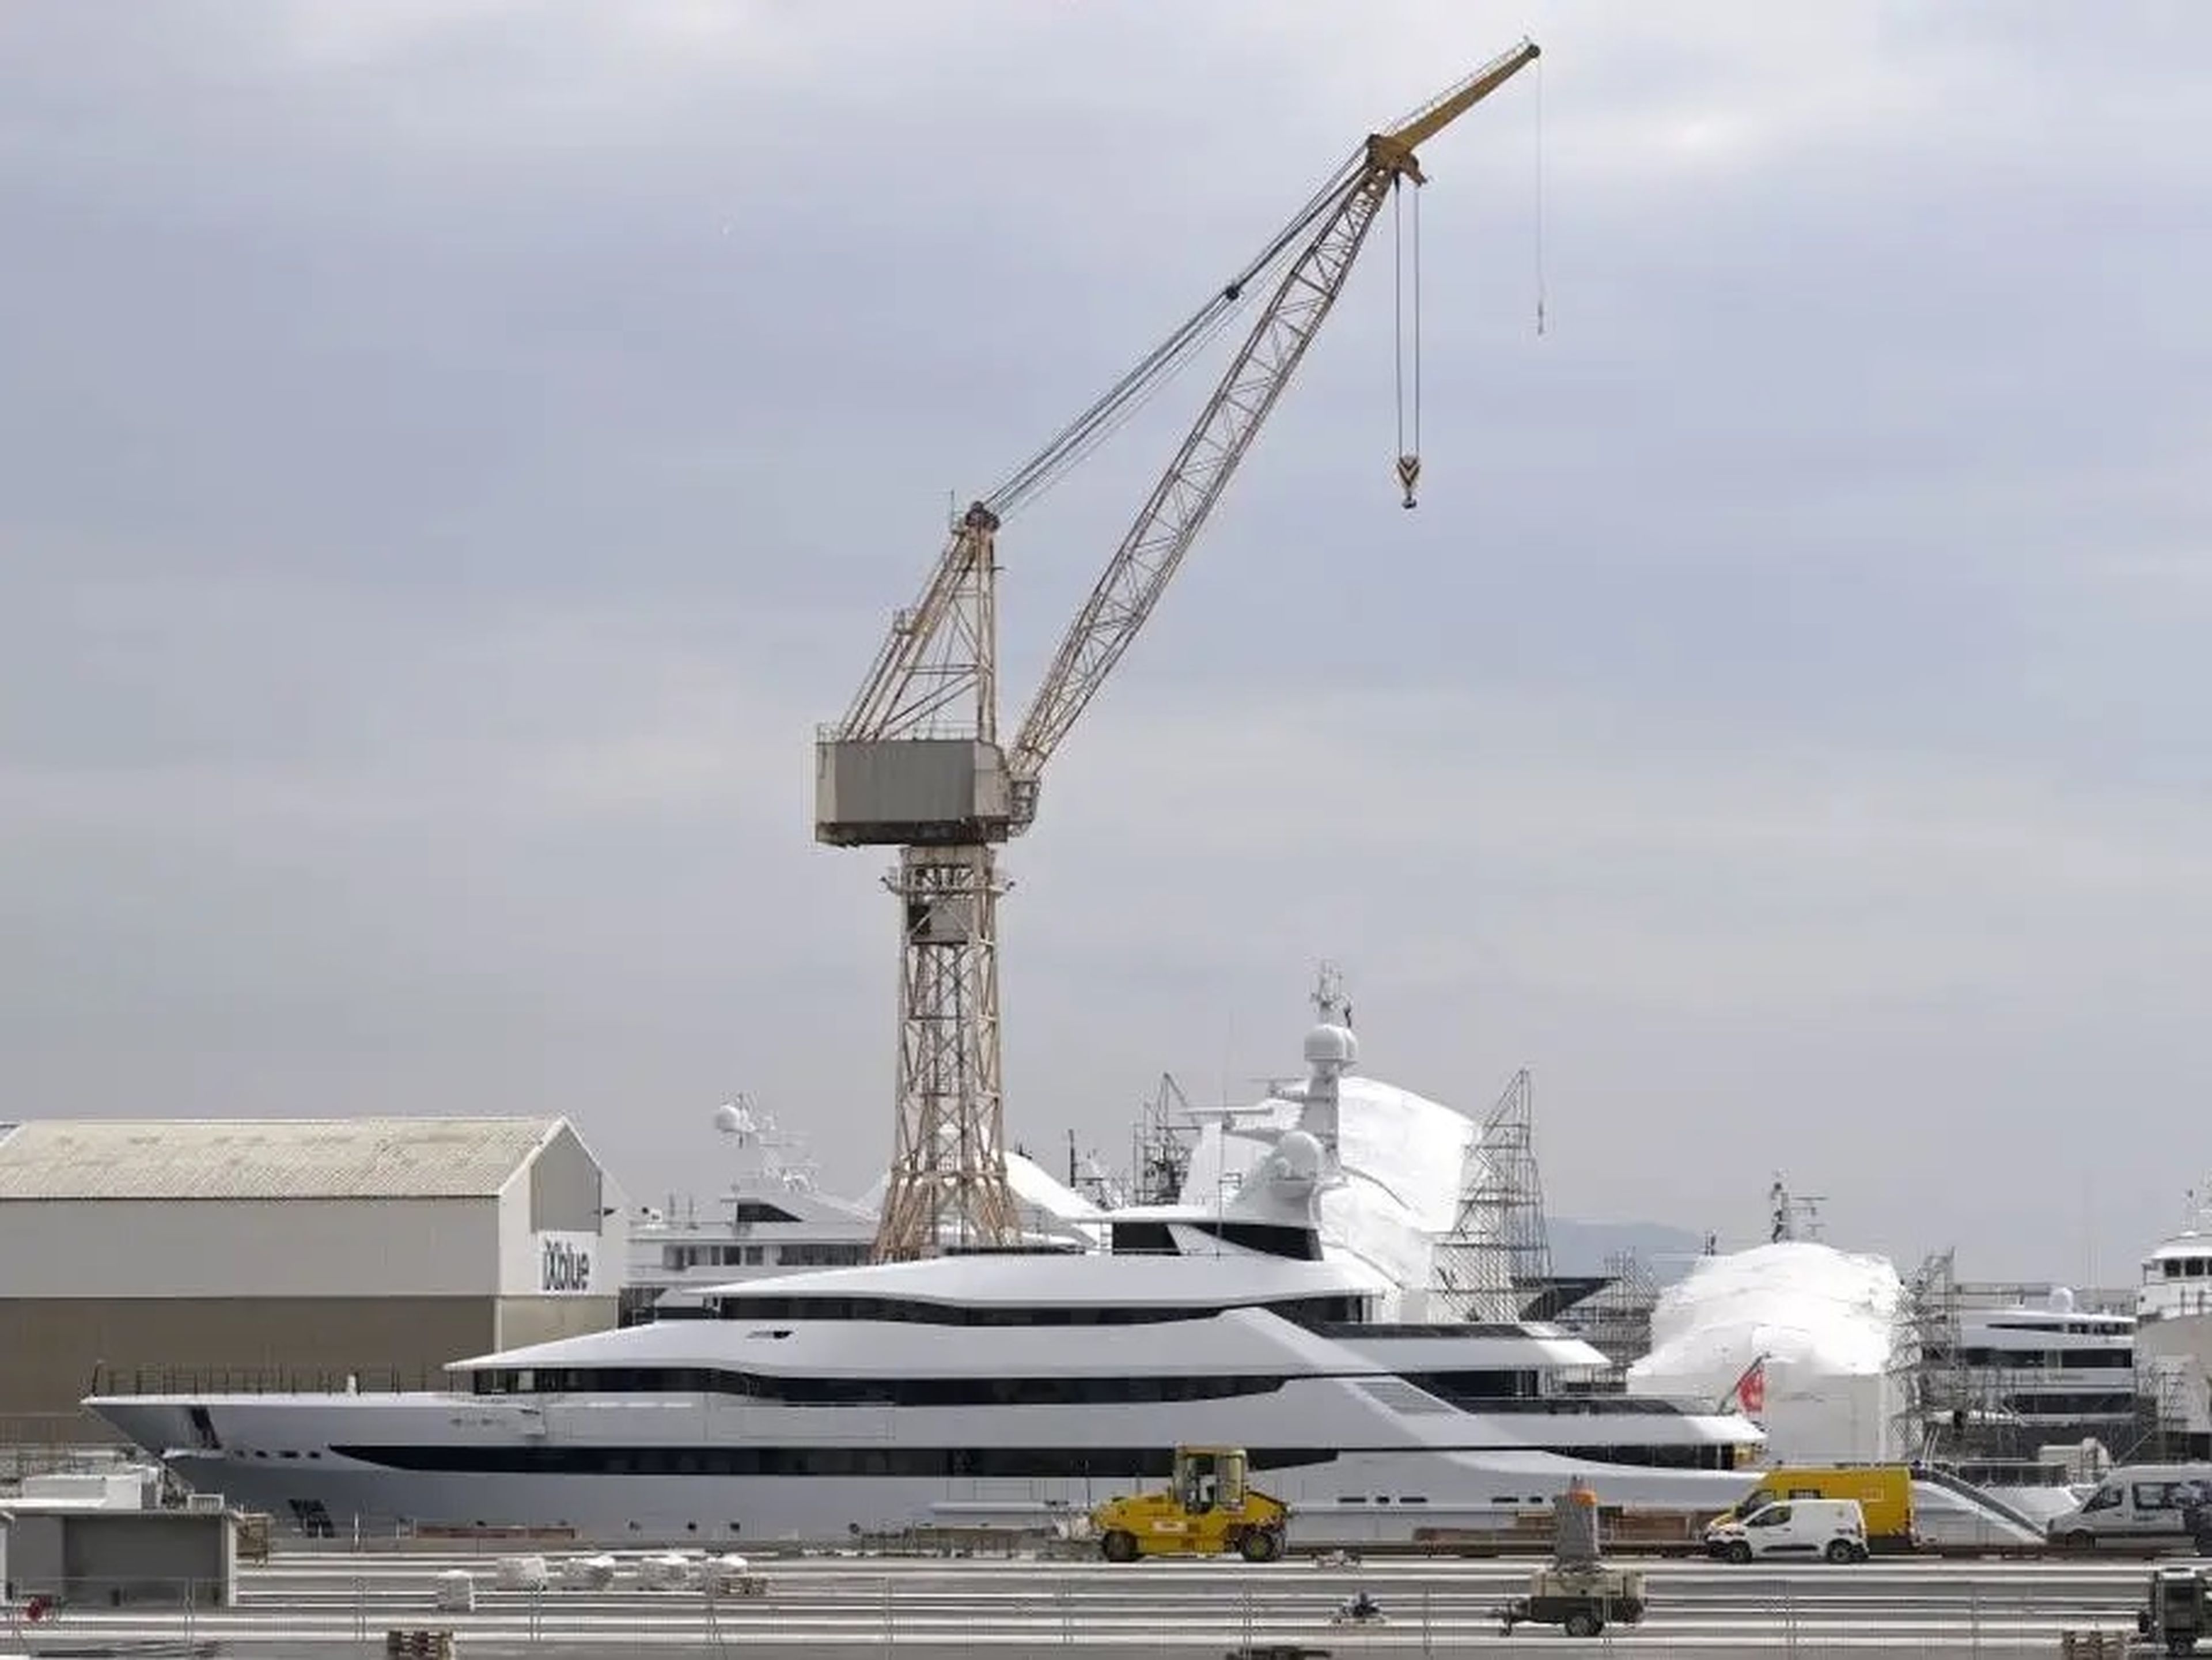 Imagen tomada el 3 de marzo de 2022 en el puerto de La Ciotat, cerca de Marsella (Francia), donde se puede ver el yate Amore Vero, propiedad al gigante energético Rosneft, compañía dirigida por Igor Sechin.